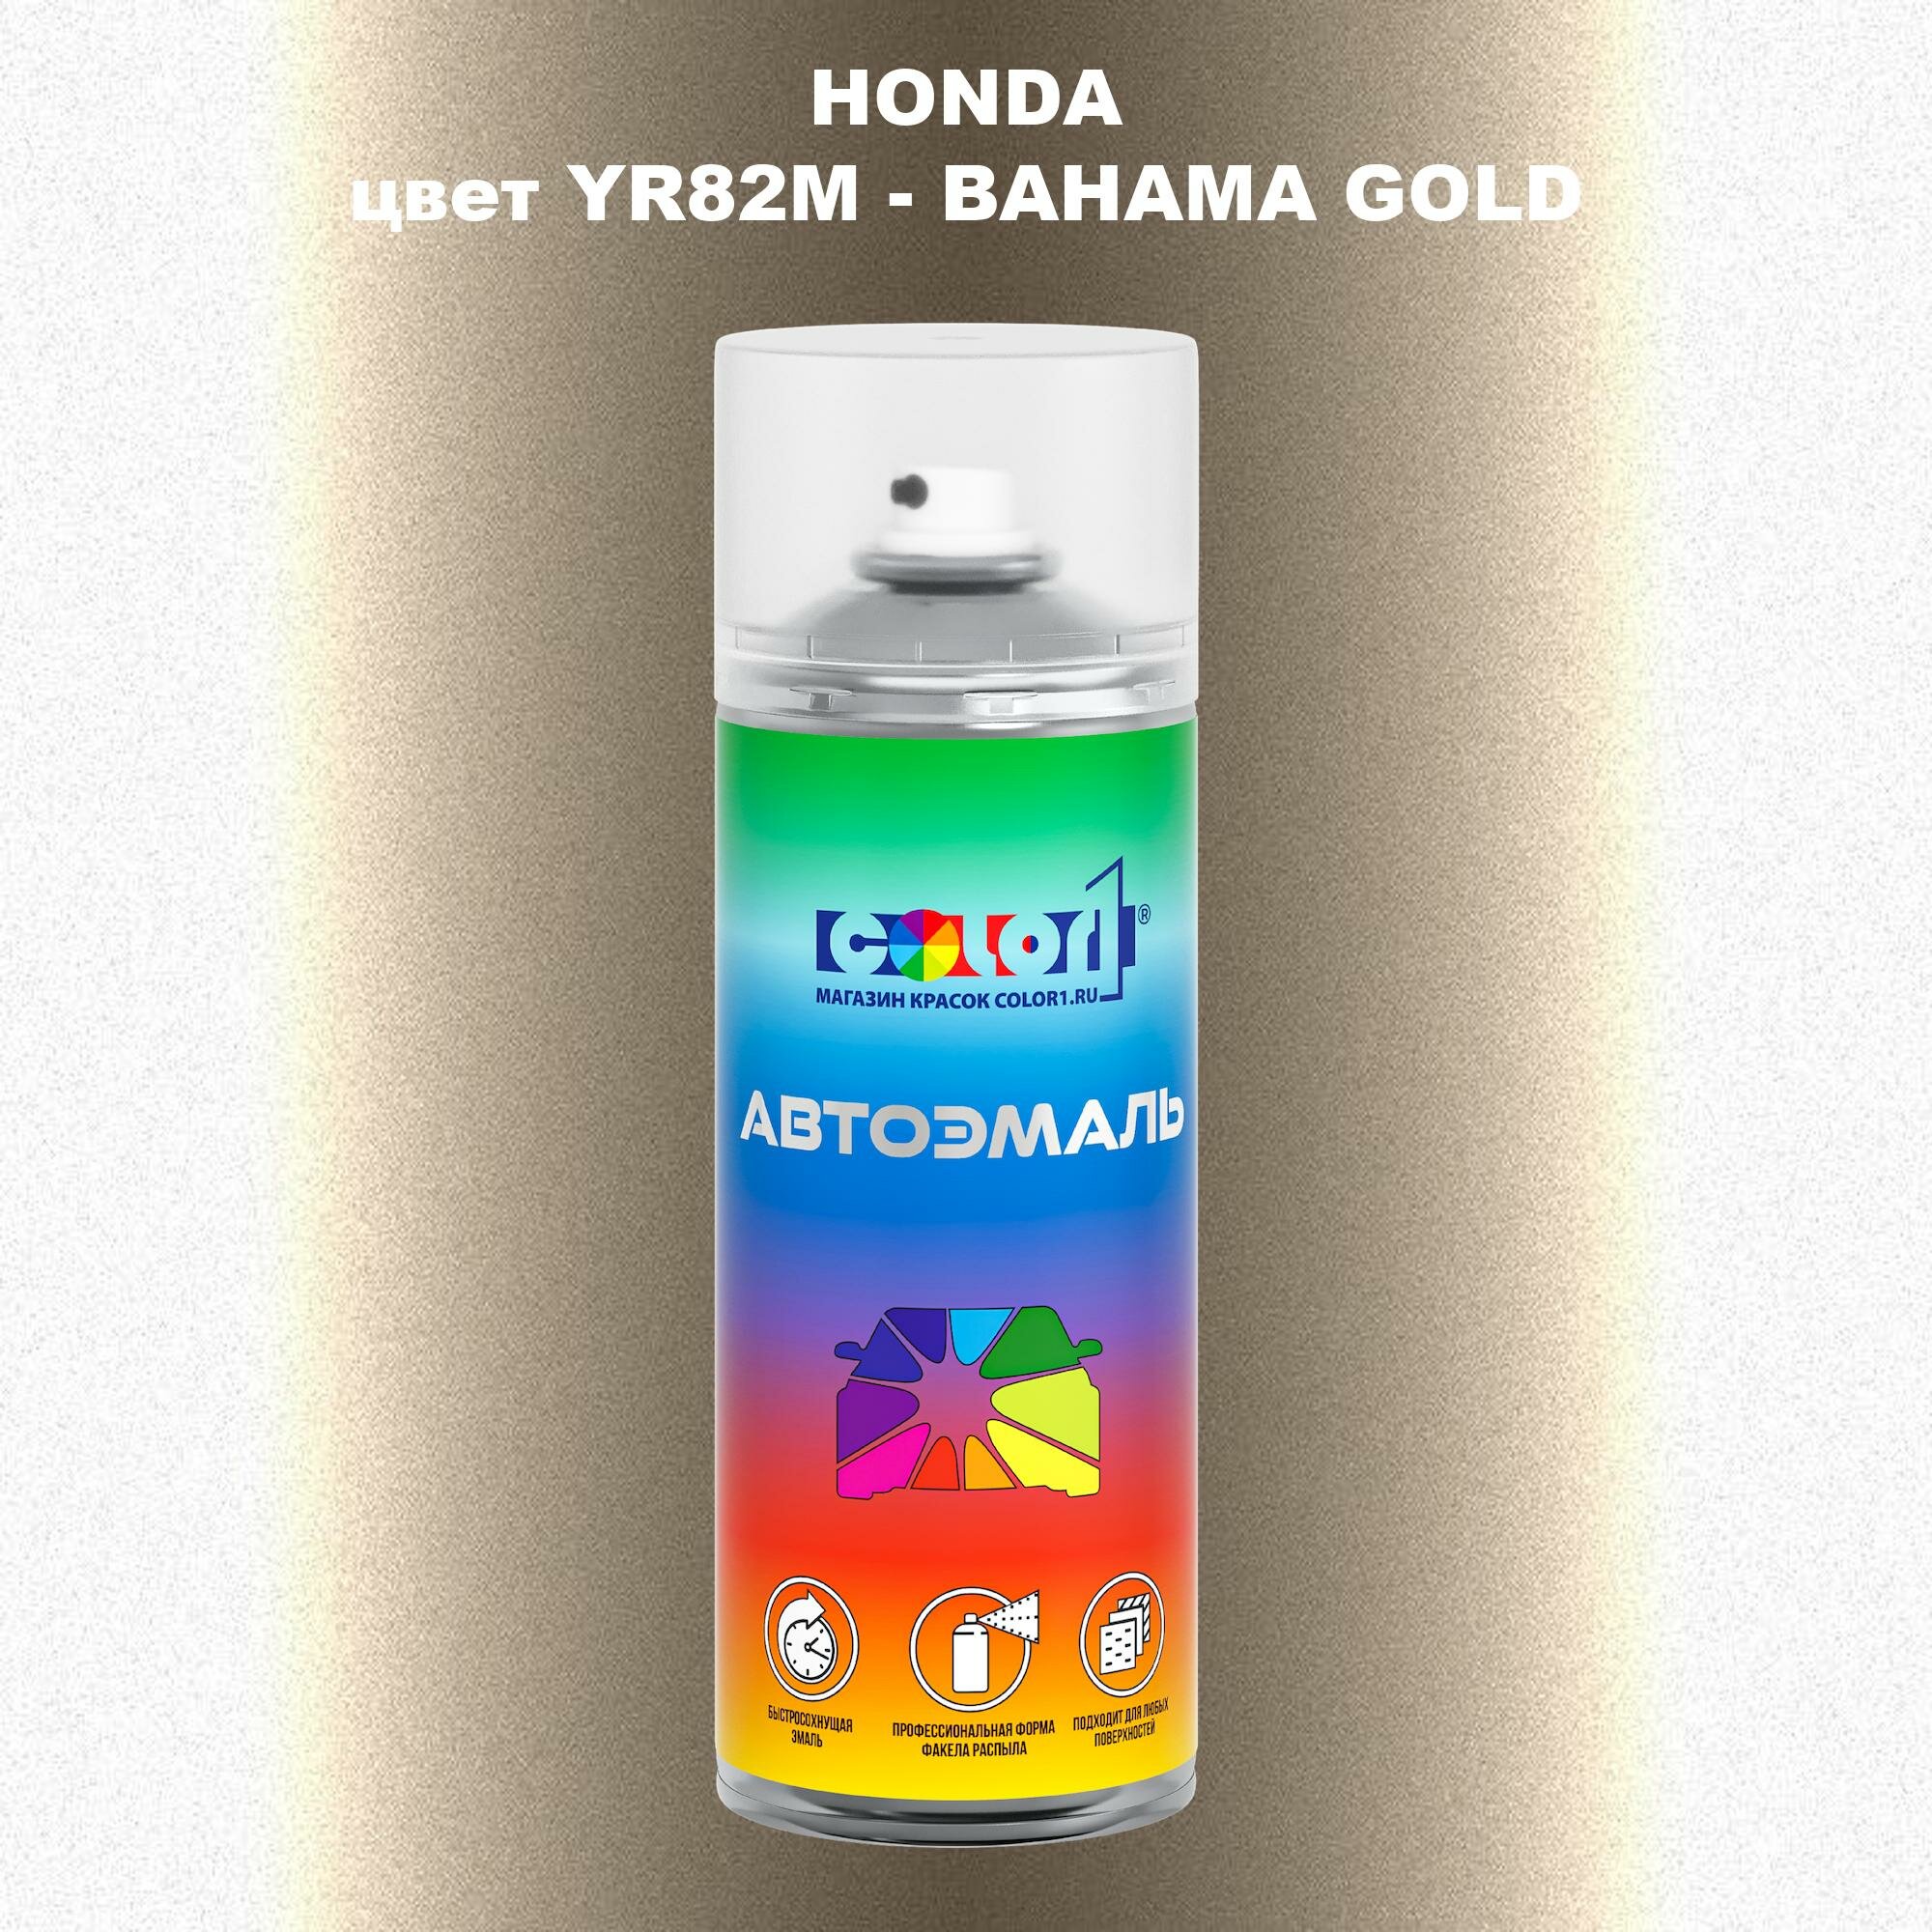 Аэрозольная краска COLOR1 для HONDA, цвет YR82M - BAHAMA GOLD